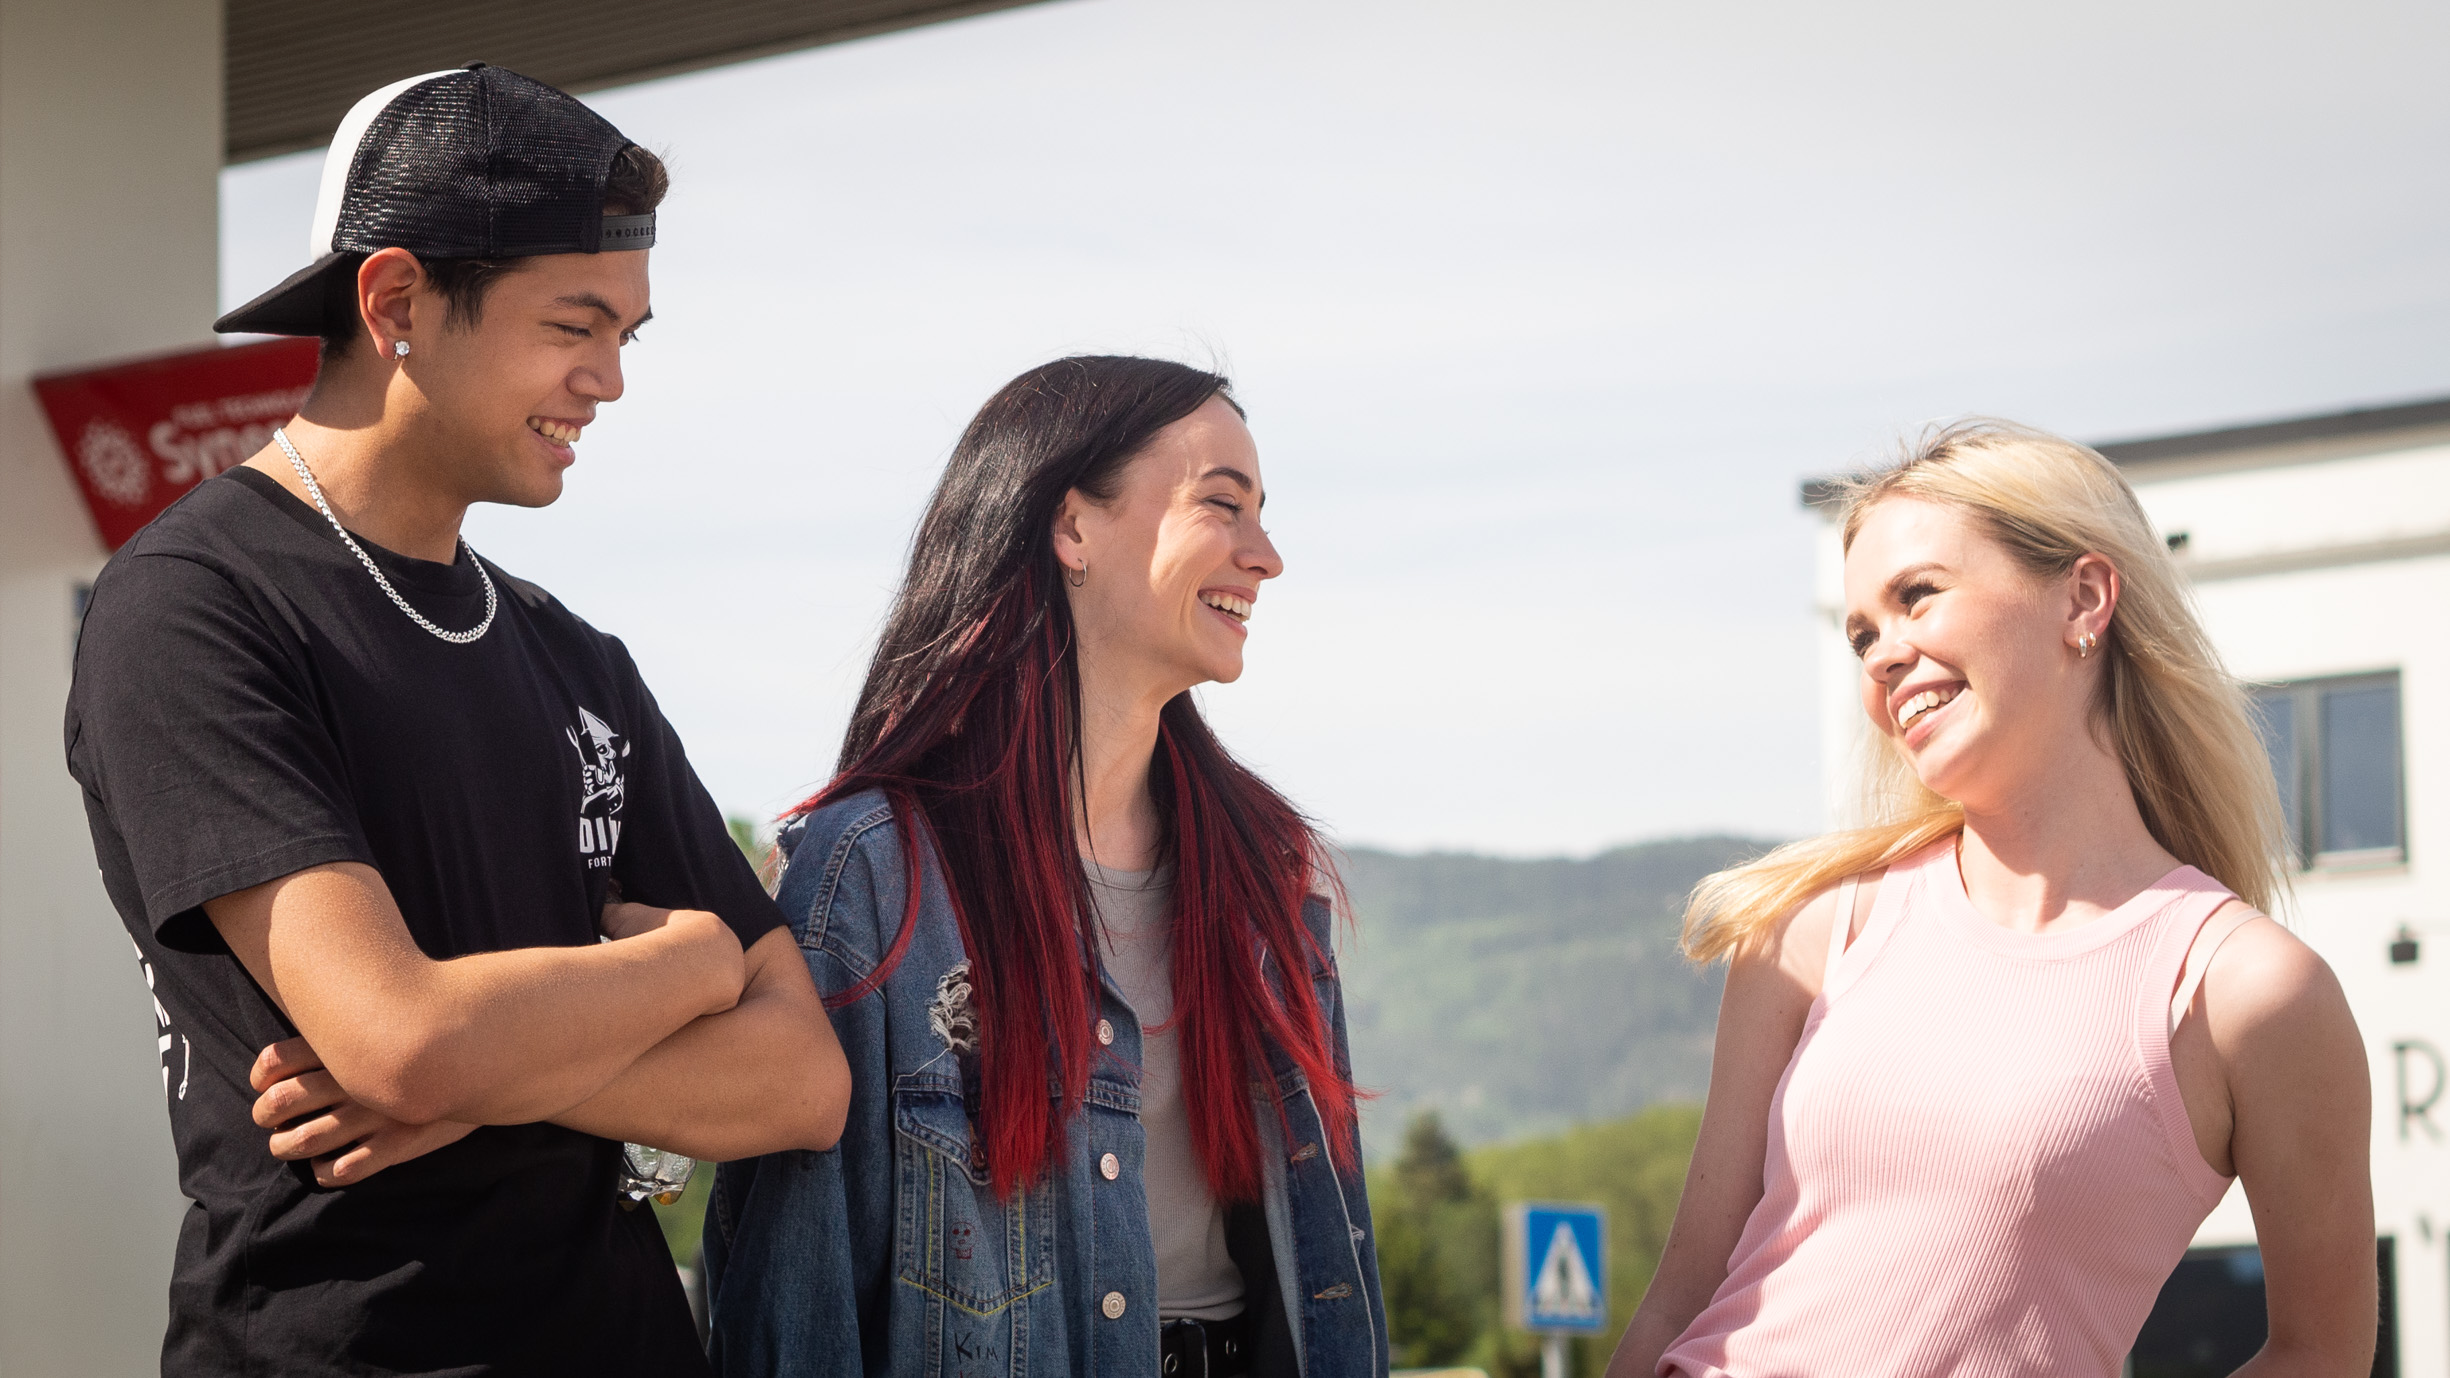 Et bilde av «Kim» (Matthew Santos) og Maja Christiansen (25), som spiller «Hege» i serien. De står på en bensinstasjon. De ser mot Amalie Sporsheim (20) spiller datteren til ordføreren, «Malene».